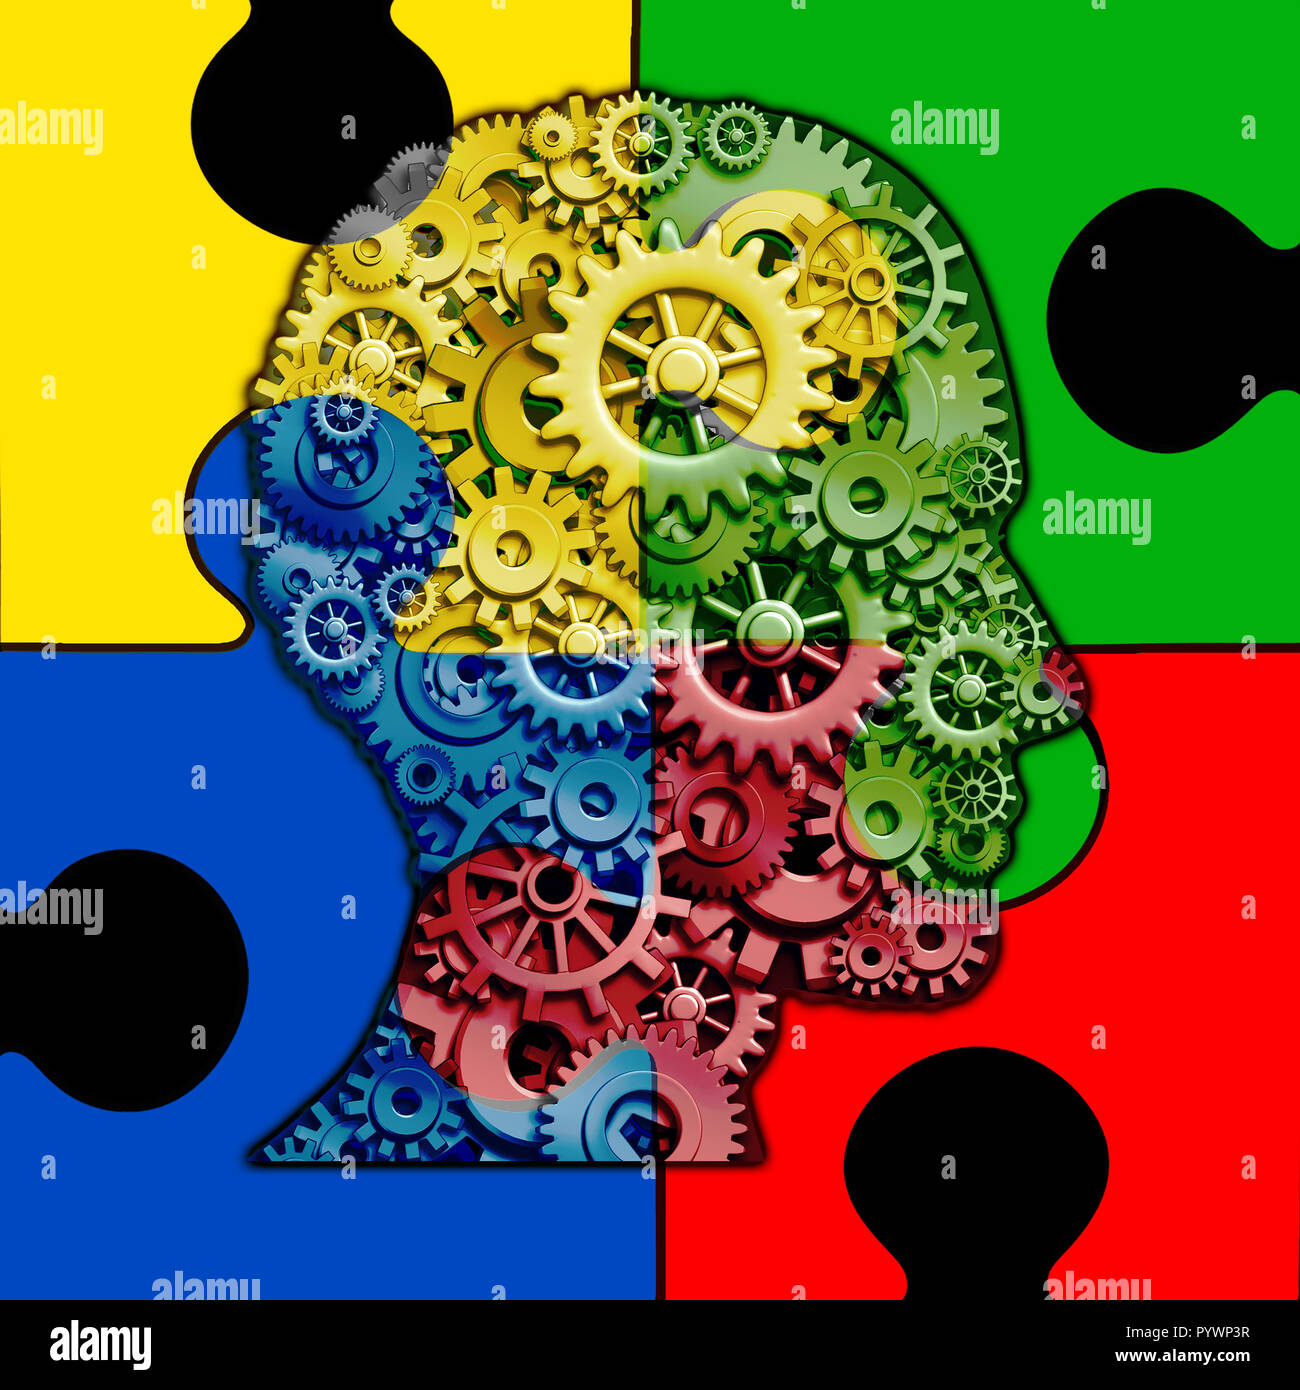 L'autismo funzione cerebrale del concetto e sviluppo autistico di disturbo come un simbolo di una comunicazione e di comportamento sociale psicologia come una testa umana. Foto Stock